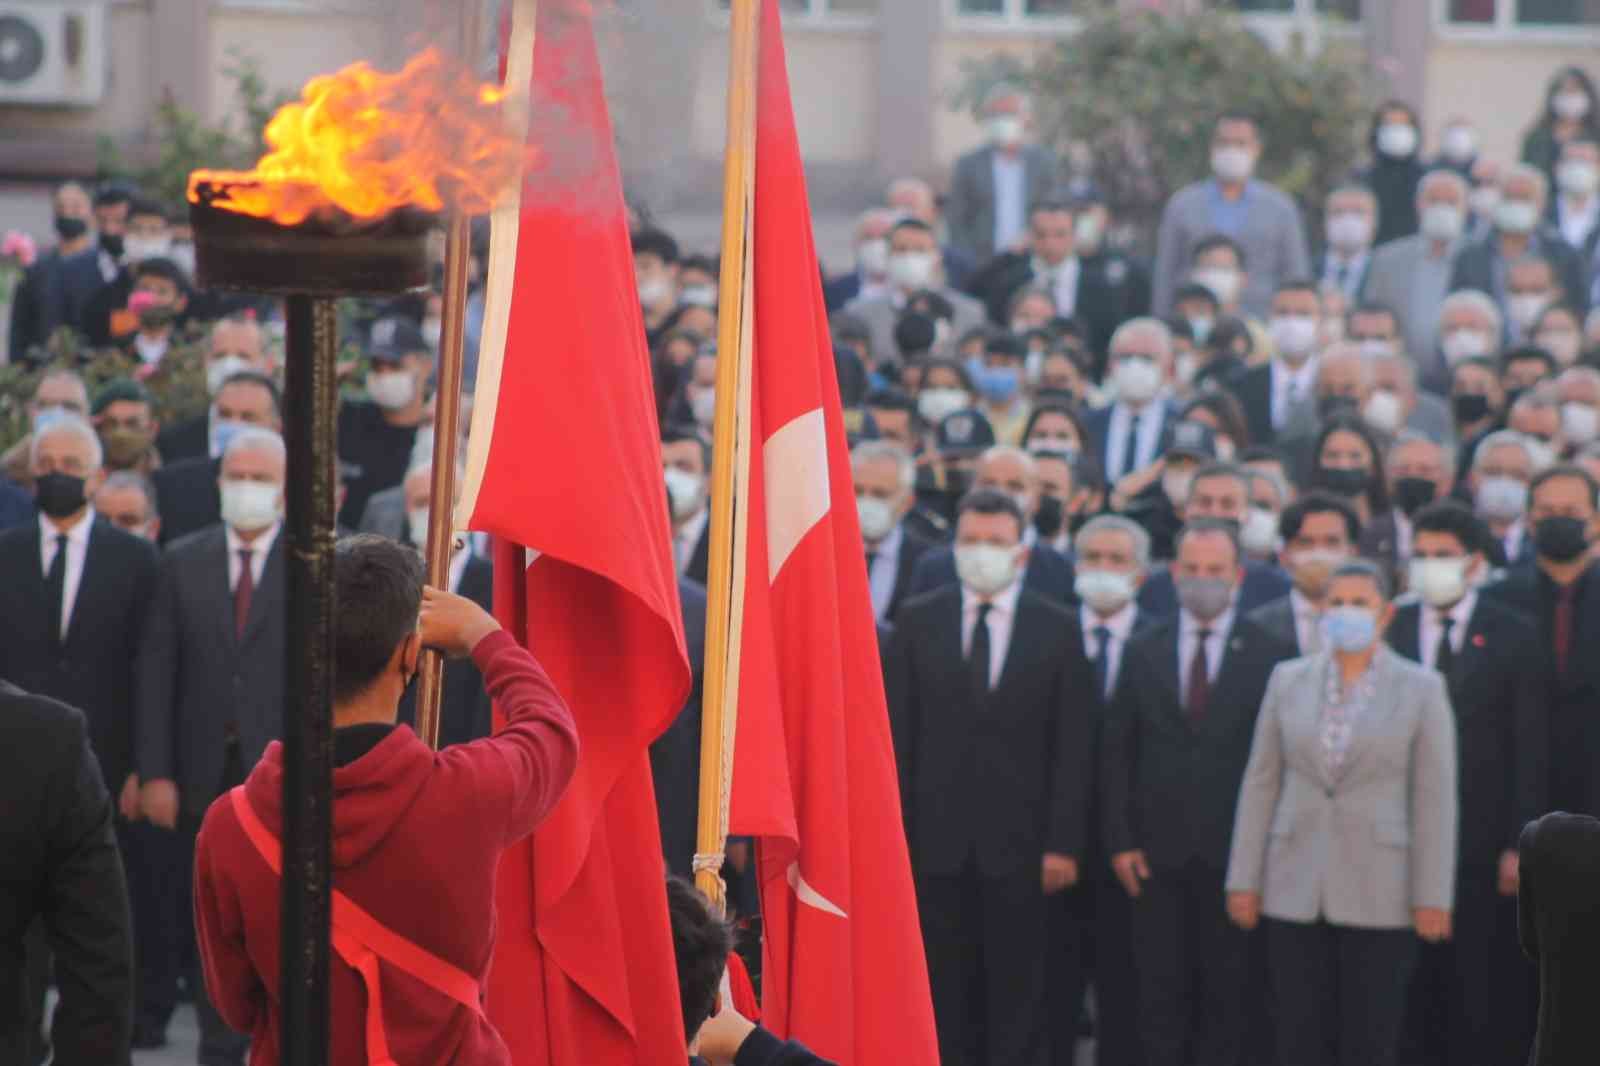 Aydın’da 10 Kasım Atatürk’ü Anma Töreni gerçekleşti #aydin